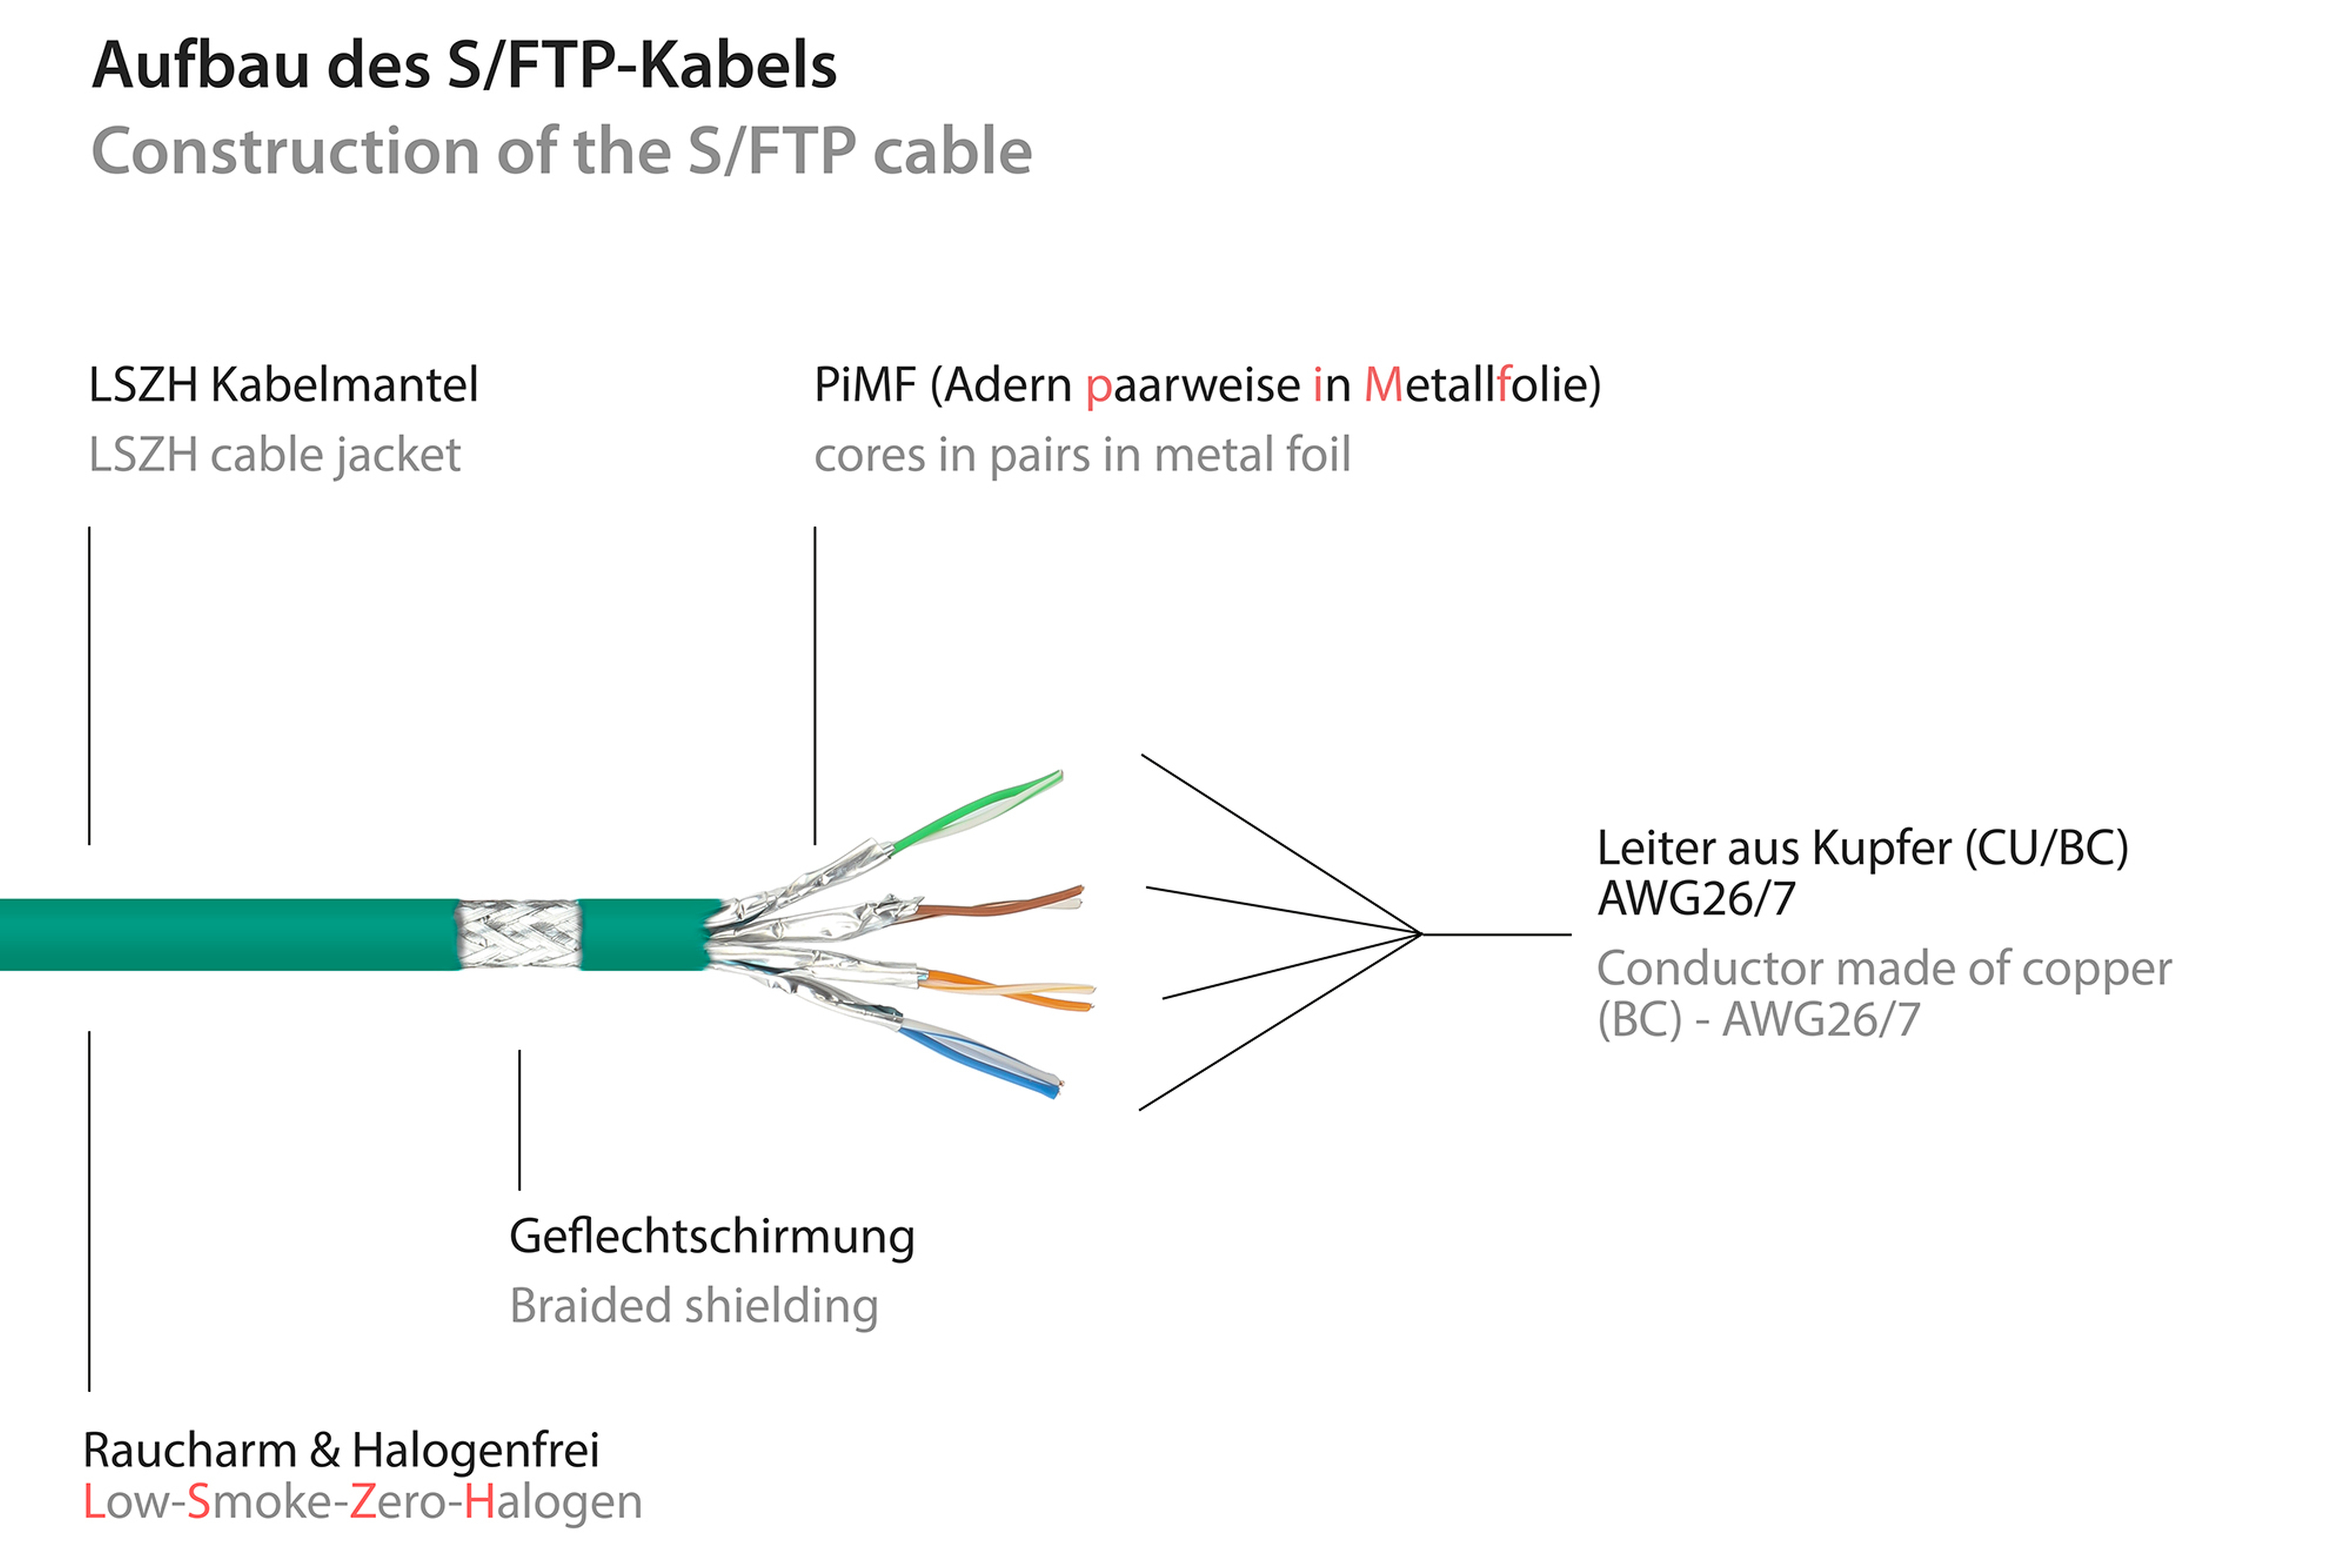 KABELMEISTER Patchkabel mit Netzwerkkabel, (RNS®), OFC, Rastnasenschutz 7,5 S/FTP, grün, m halogenfrei